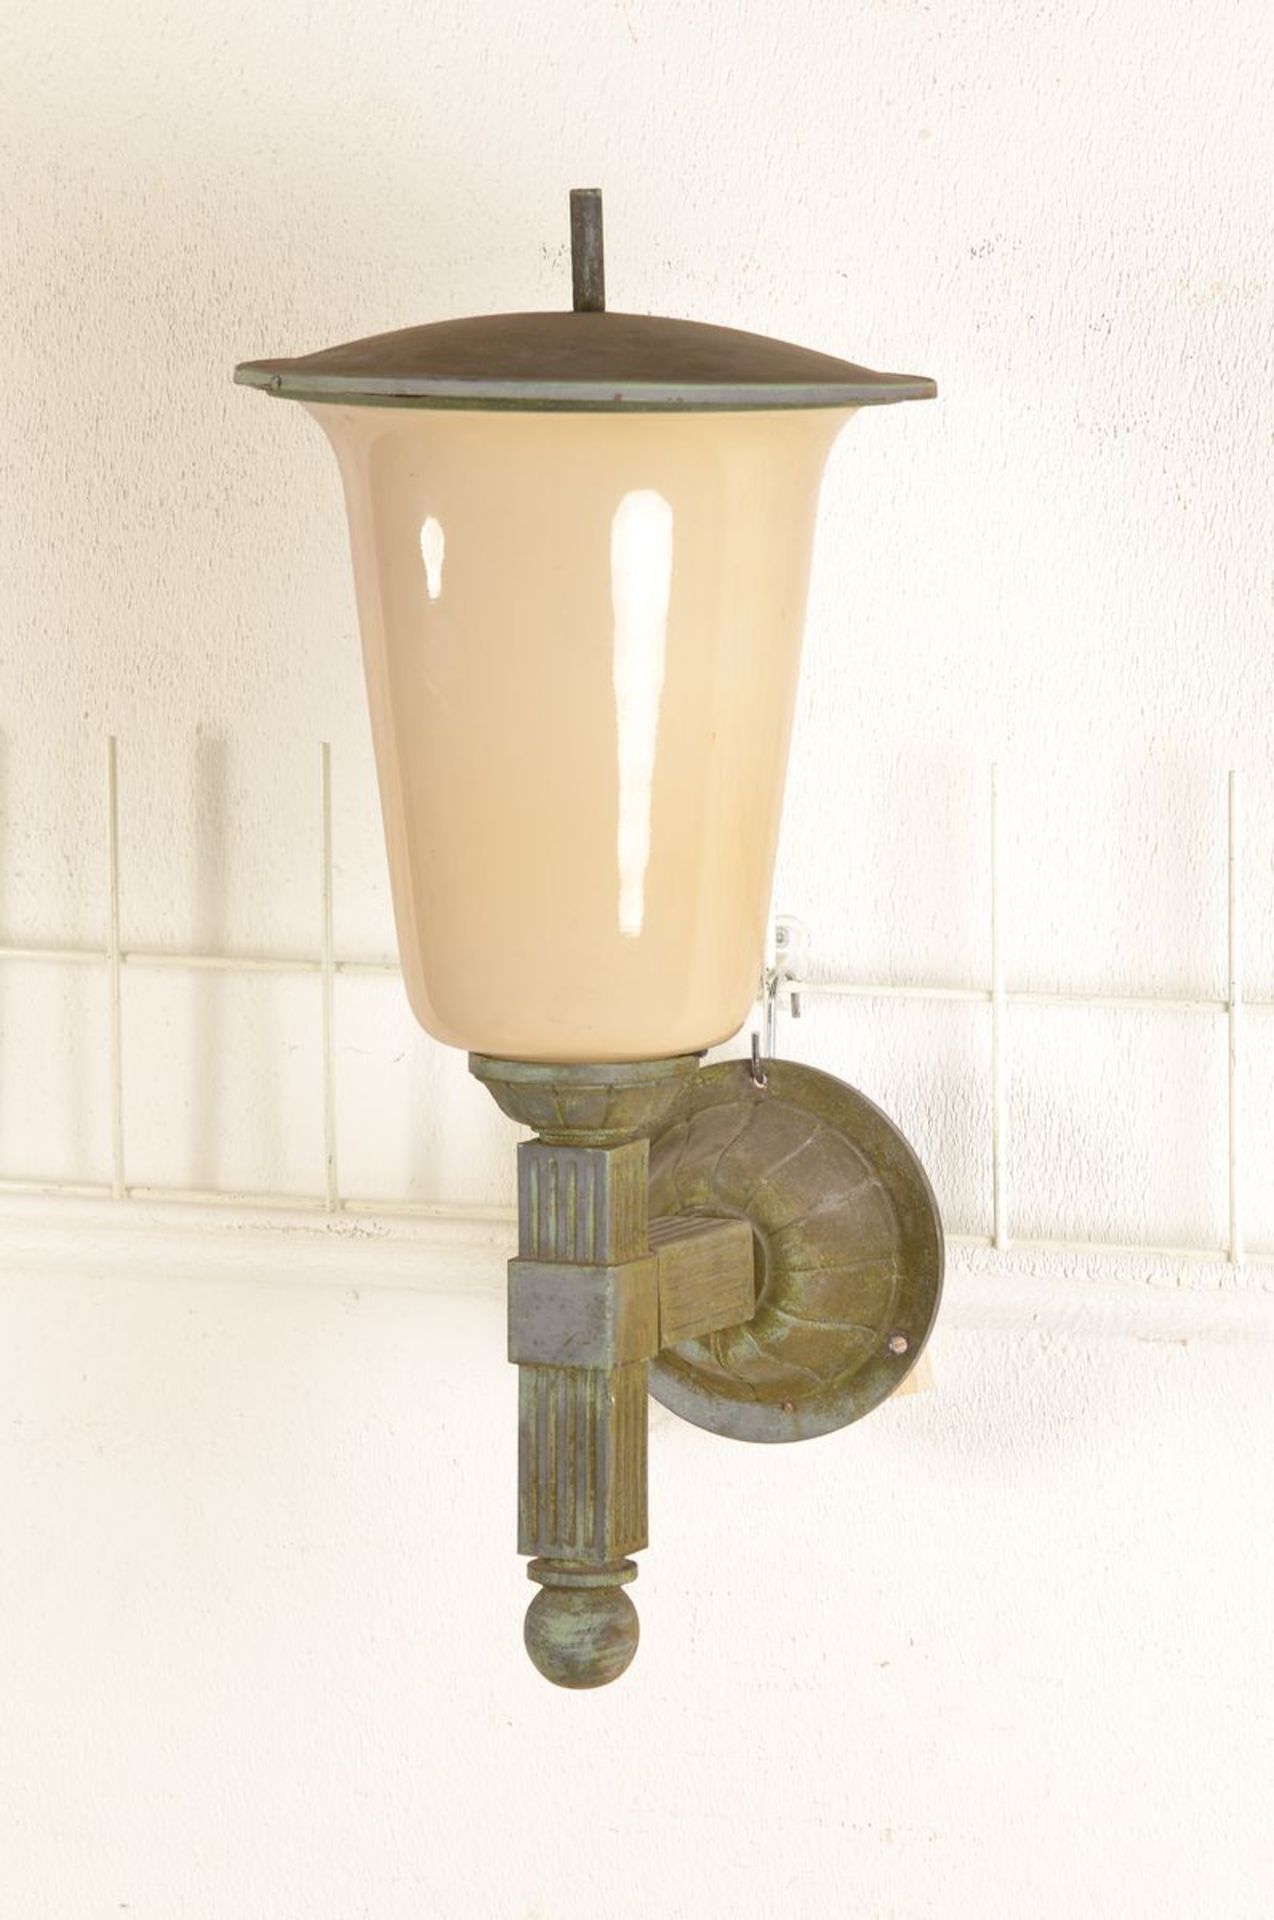 Außen-Wandlampe, deutsch, 1930er Jahre, starker Bauhaus-Einfluß spürbar, schwerer Metallguß